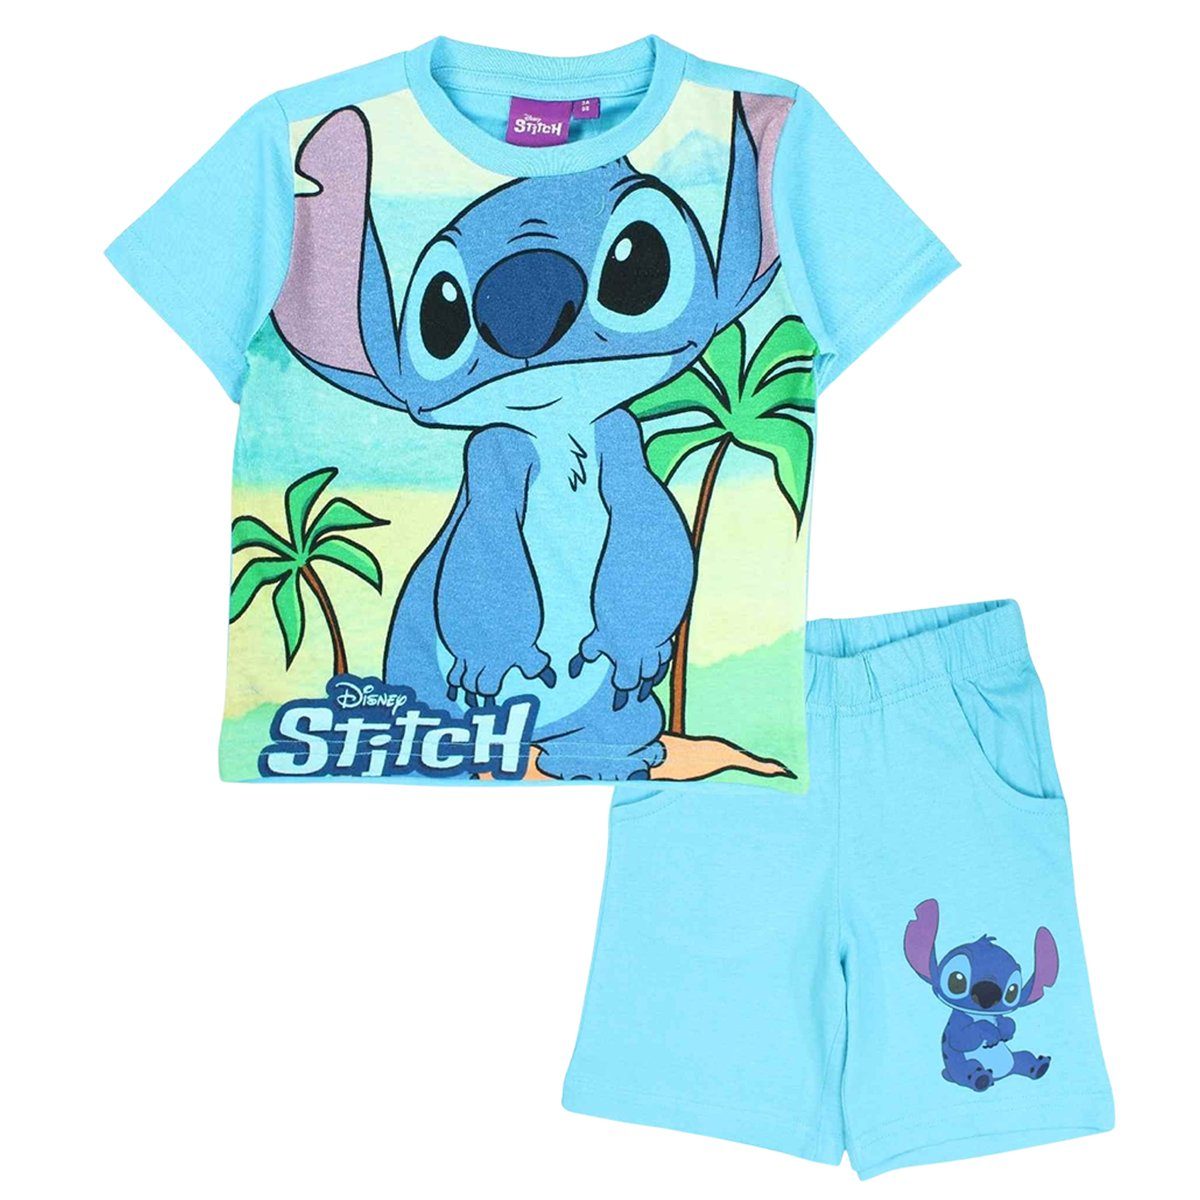 Lilo & Stitch Shorty (2 tlg) Jungen Set T -Shirt & Kurze Hose Gr. 98 - 128 cm Hellblau